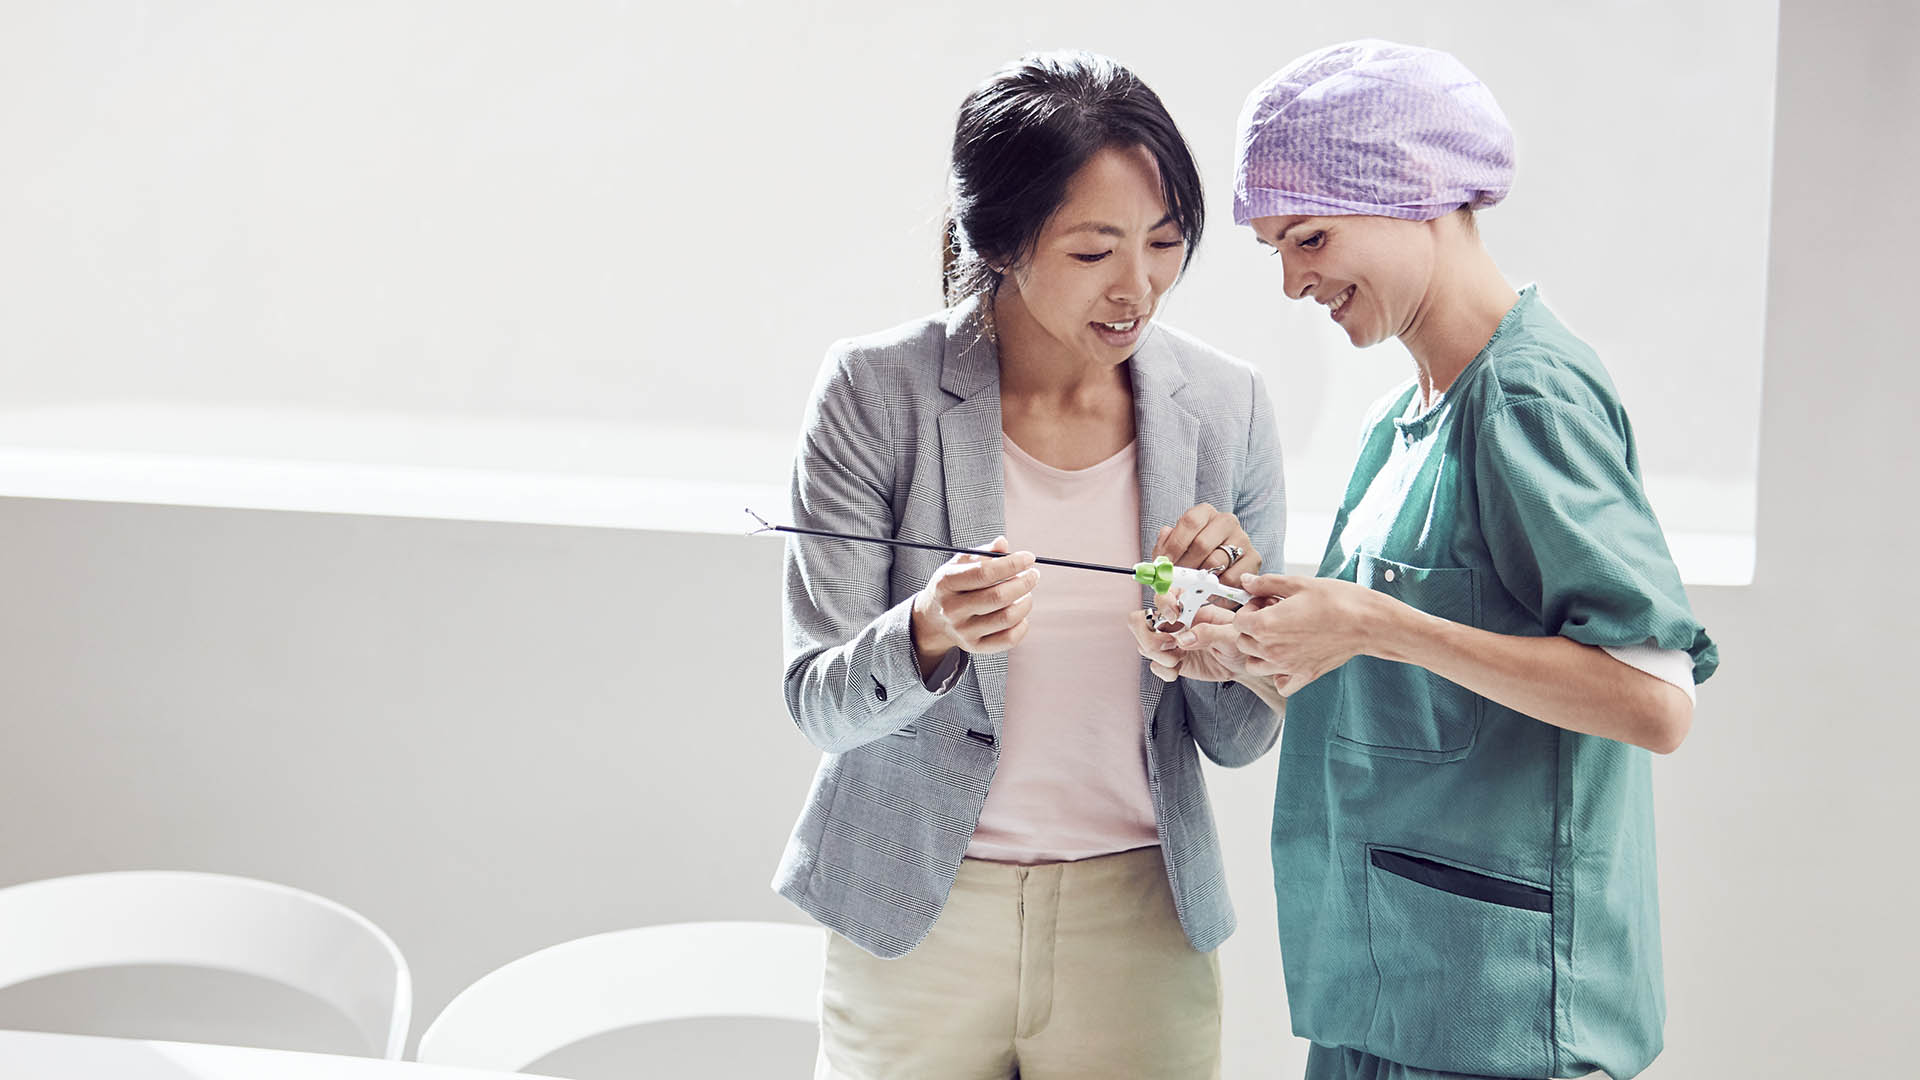 vrouwelijke leverancier die een chirurgisch instrument aan een vrouwelijke zorgprofessional demonstreert